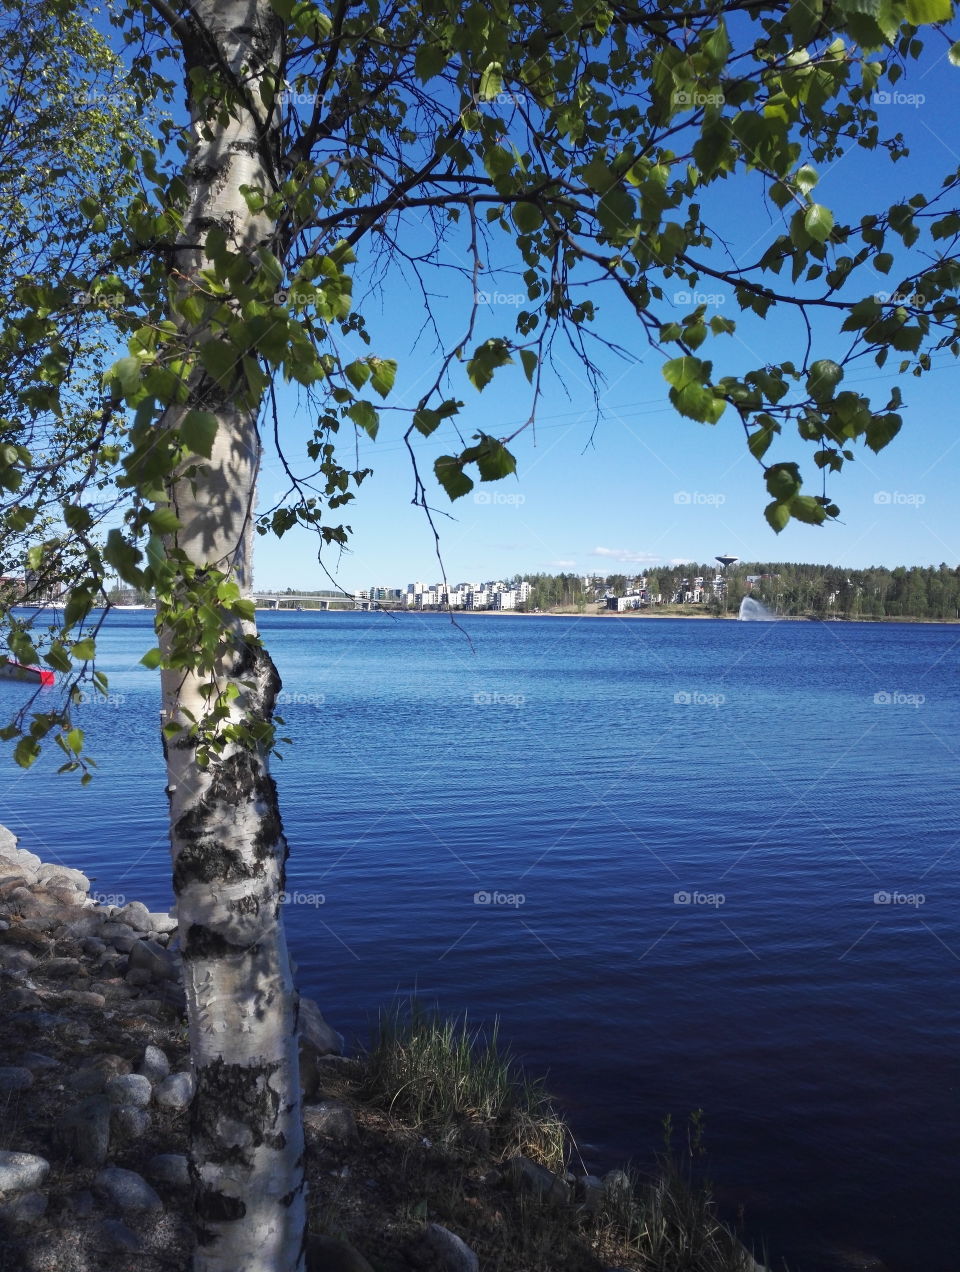 Lake Jyväsjärvi